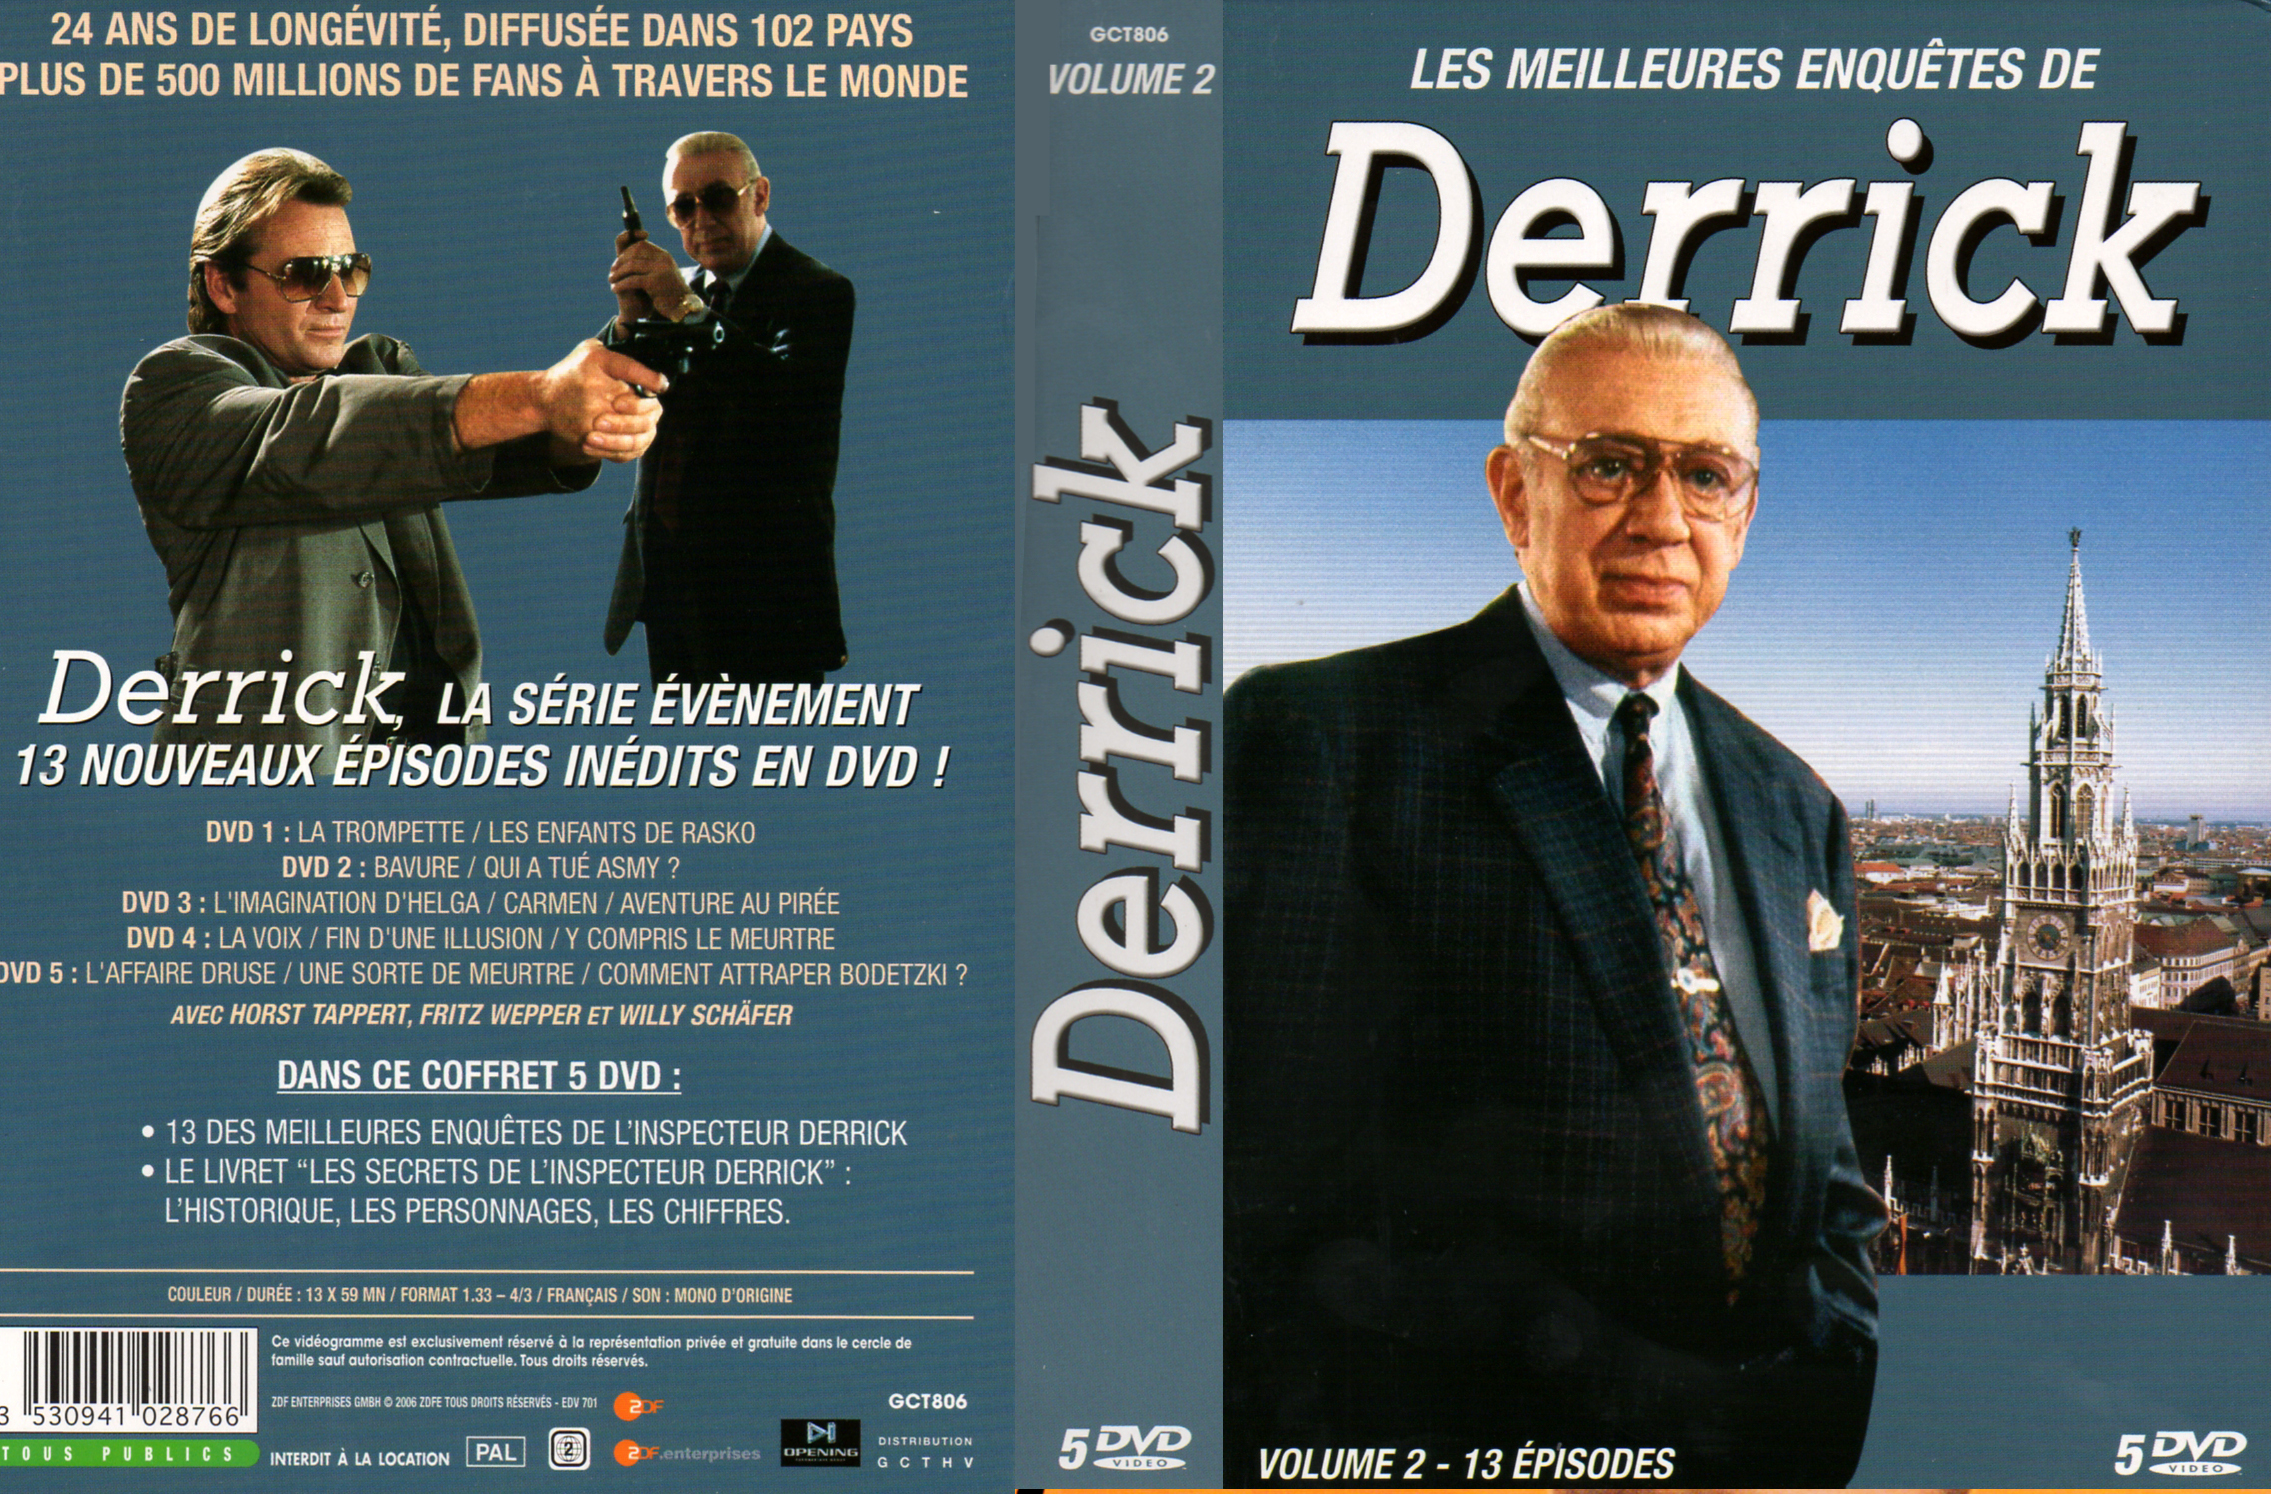 Jaquette DVD Derrick vol 02